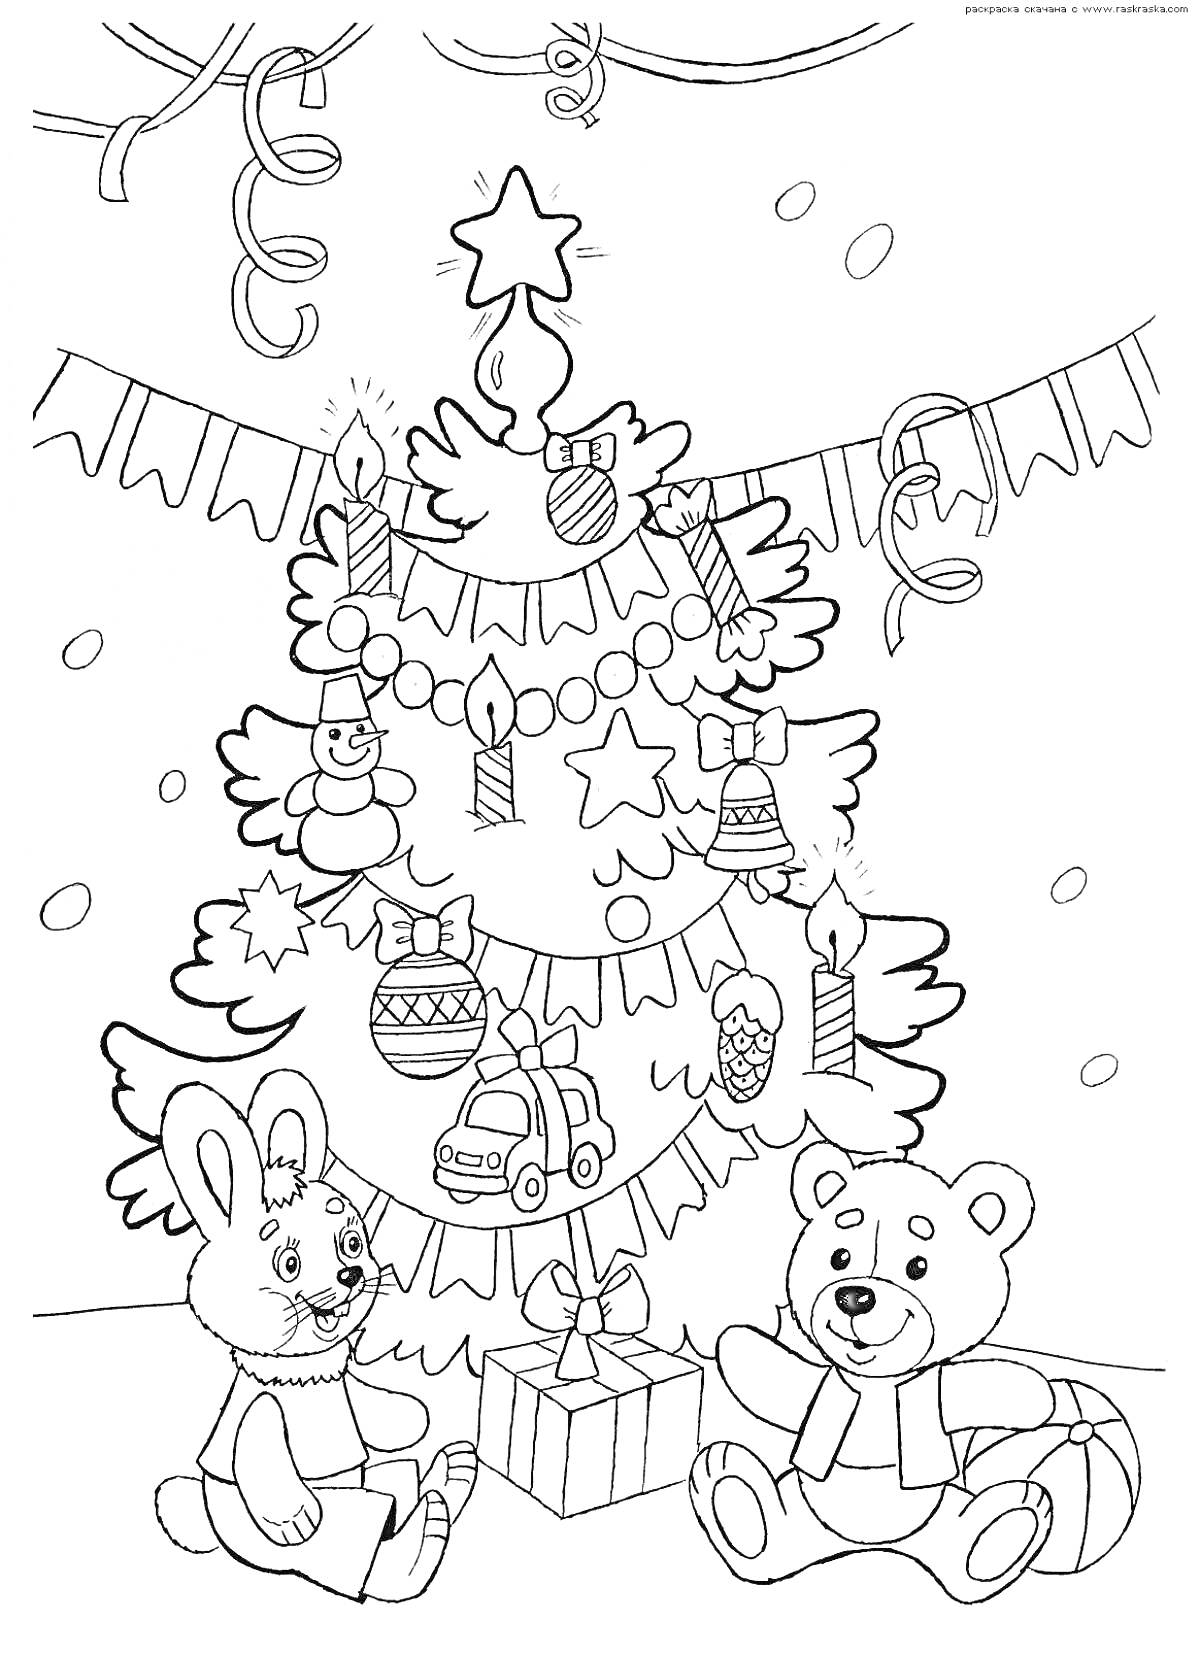 Новогодняя елка с игрушками, свечами, гирляндами, зайцем и медведем